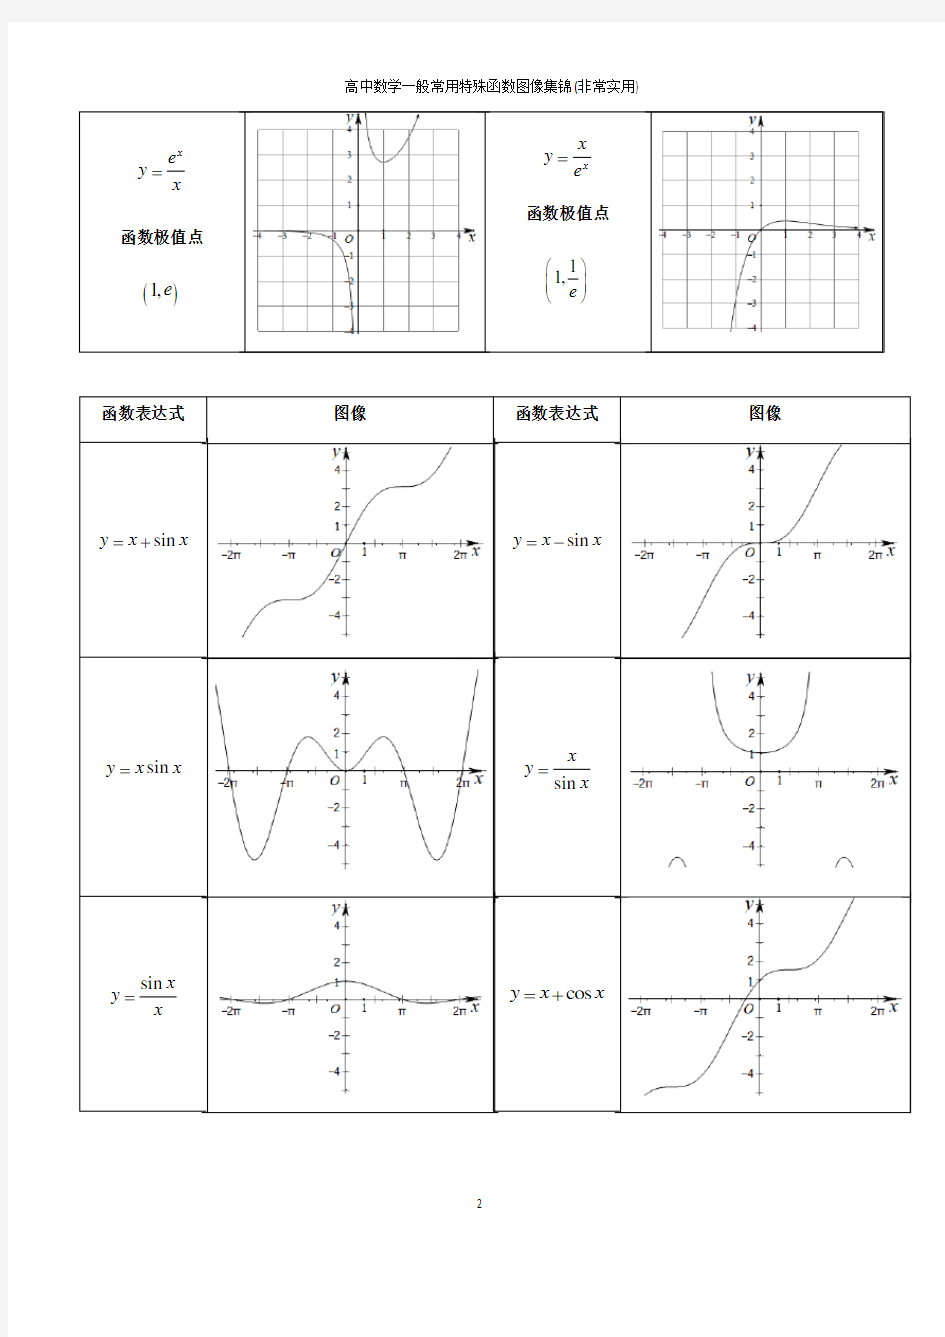 高中数学一般常用特殊函数图像集锦(非常实用)